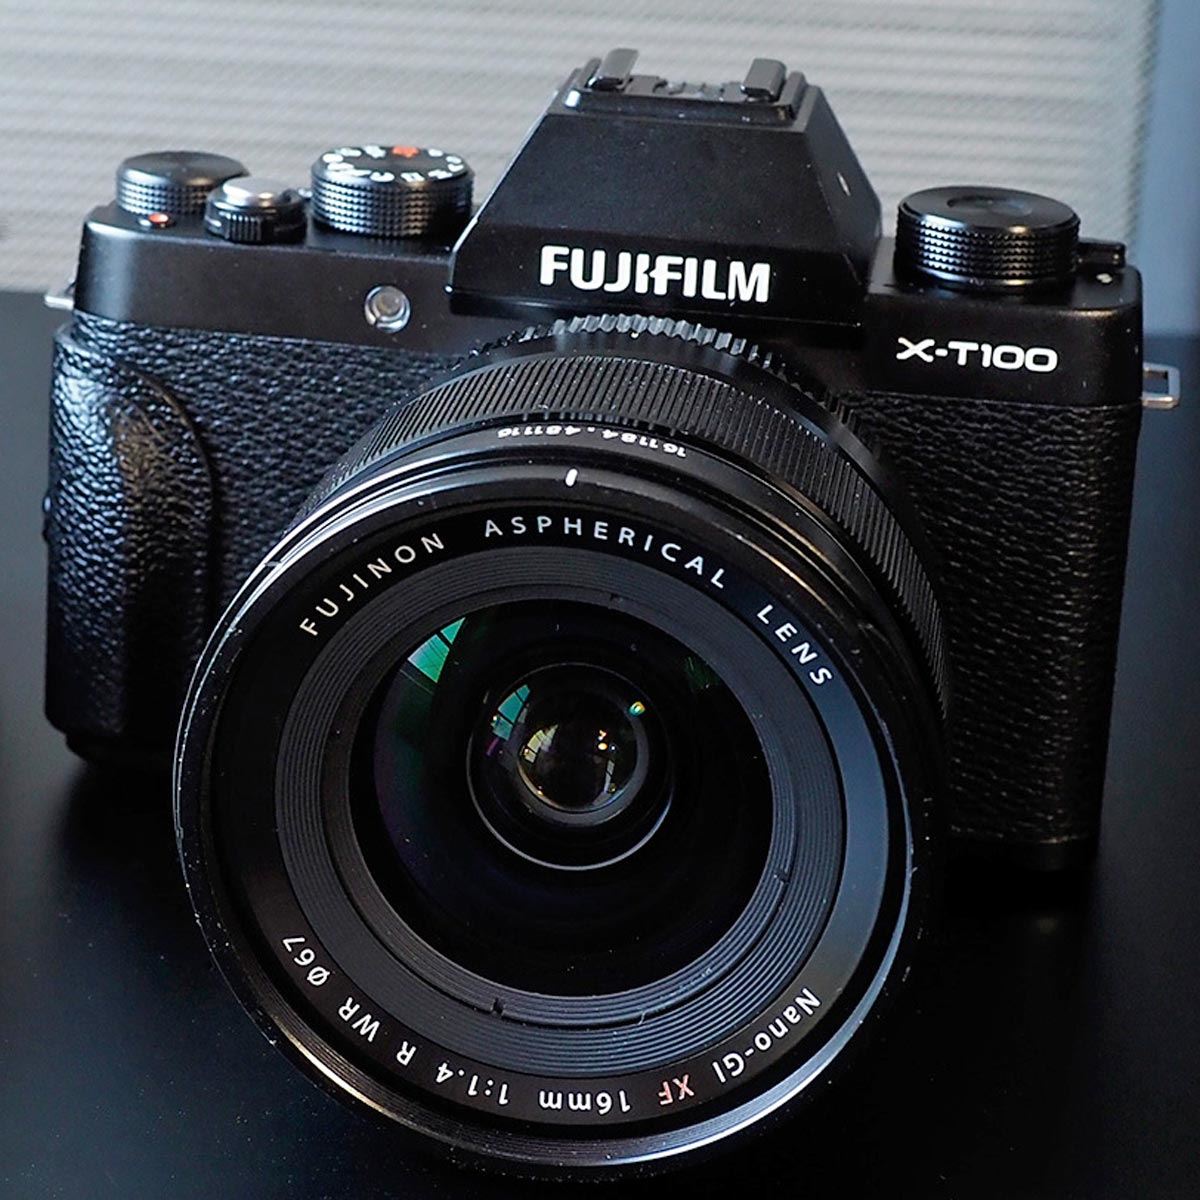 日本初の公式 Fujifilm XT100 富士フィルム - XT100 フィルムカメラ